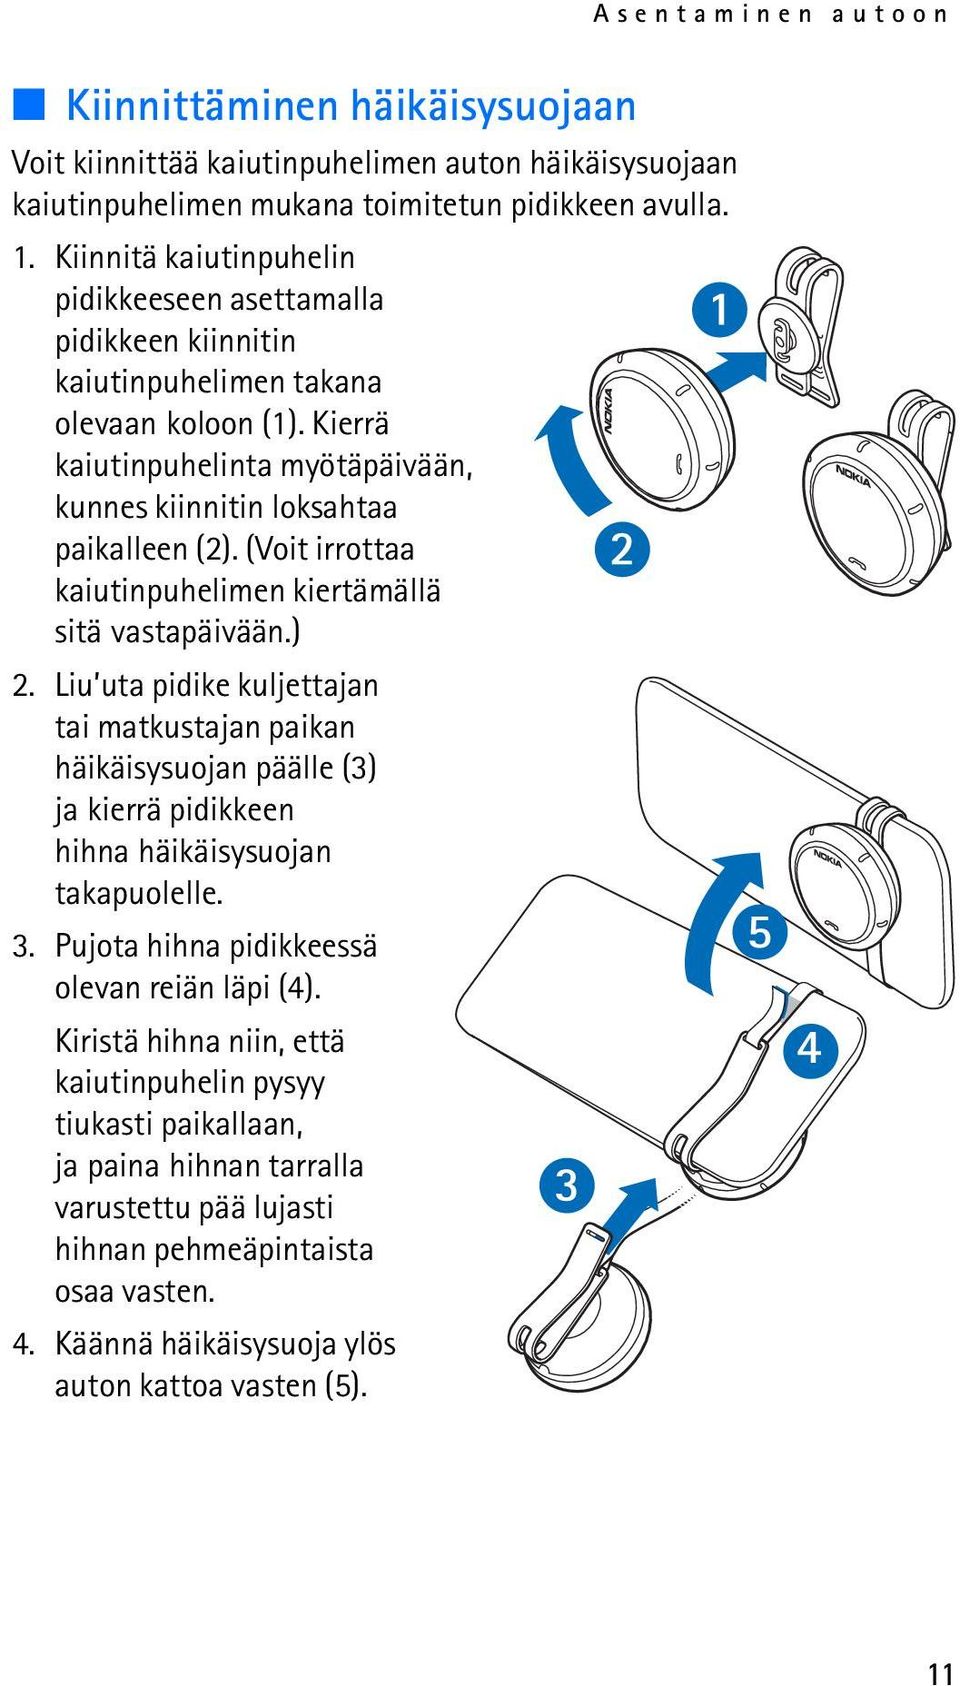 (Voit irrottaa kaiutinpuhelimen kiertämällä sitä vastapäivään.) 2. Liu uta pidike kuljettajan tai matkustajan paikan häikäisysuojan päälle (3) ja kierrä pidikkeen hihna häikäisysuojan takapuolelle. 3.